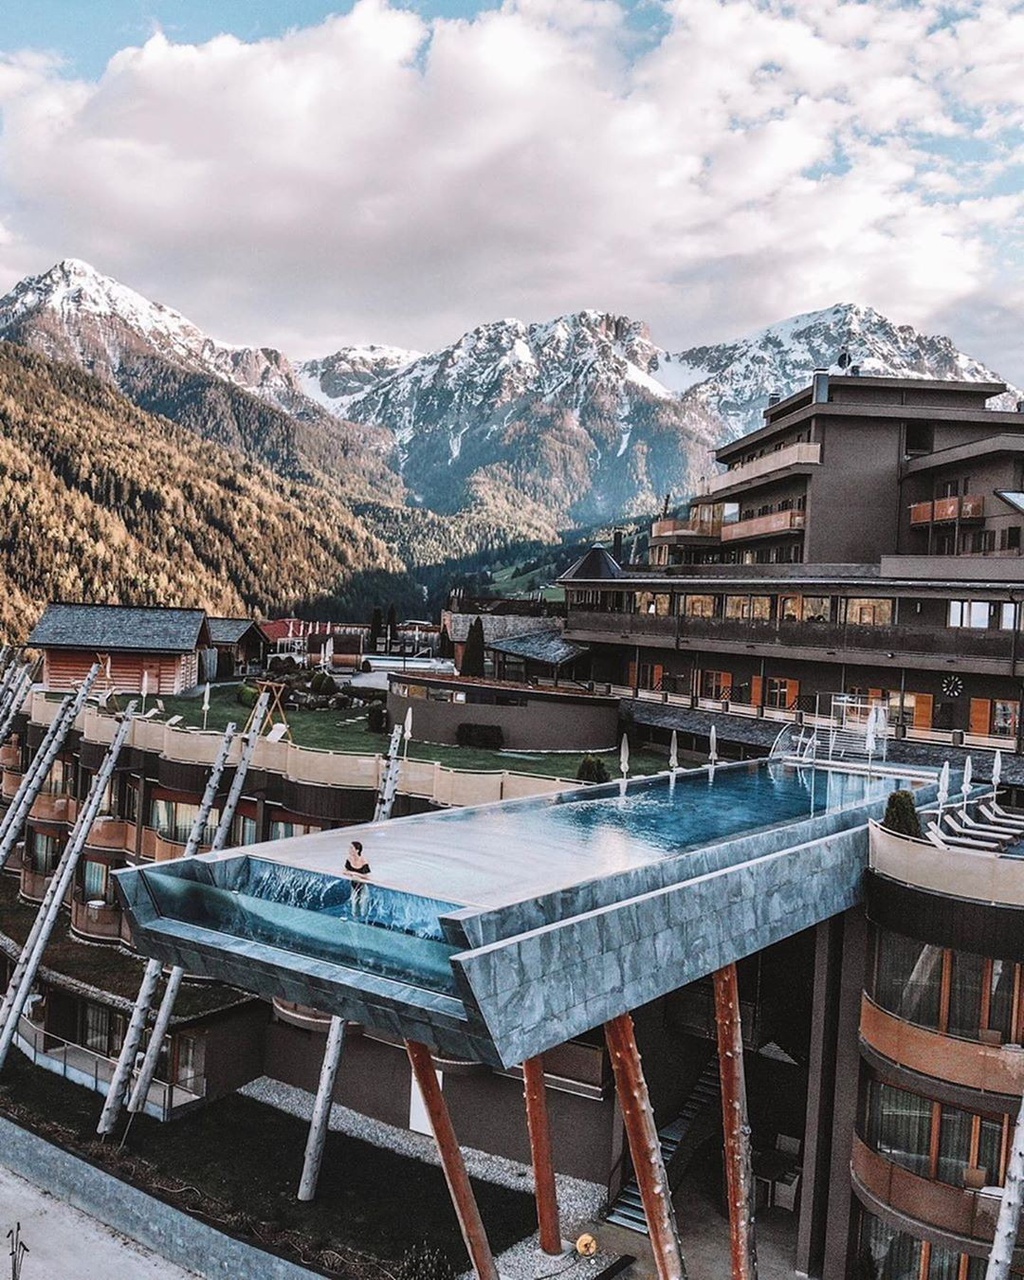 Hồ bơi vô cực cao 12 m trên nóc khách sạn Italy